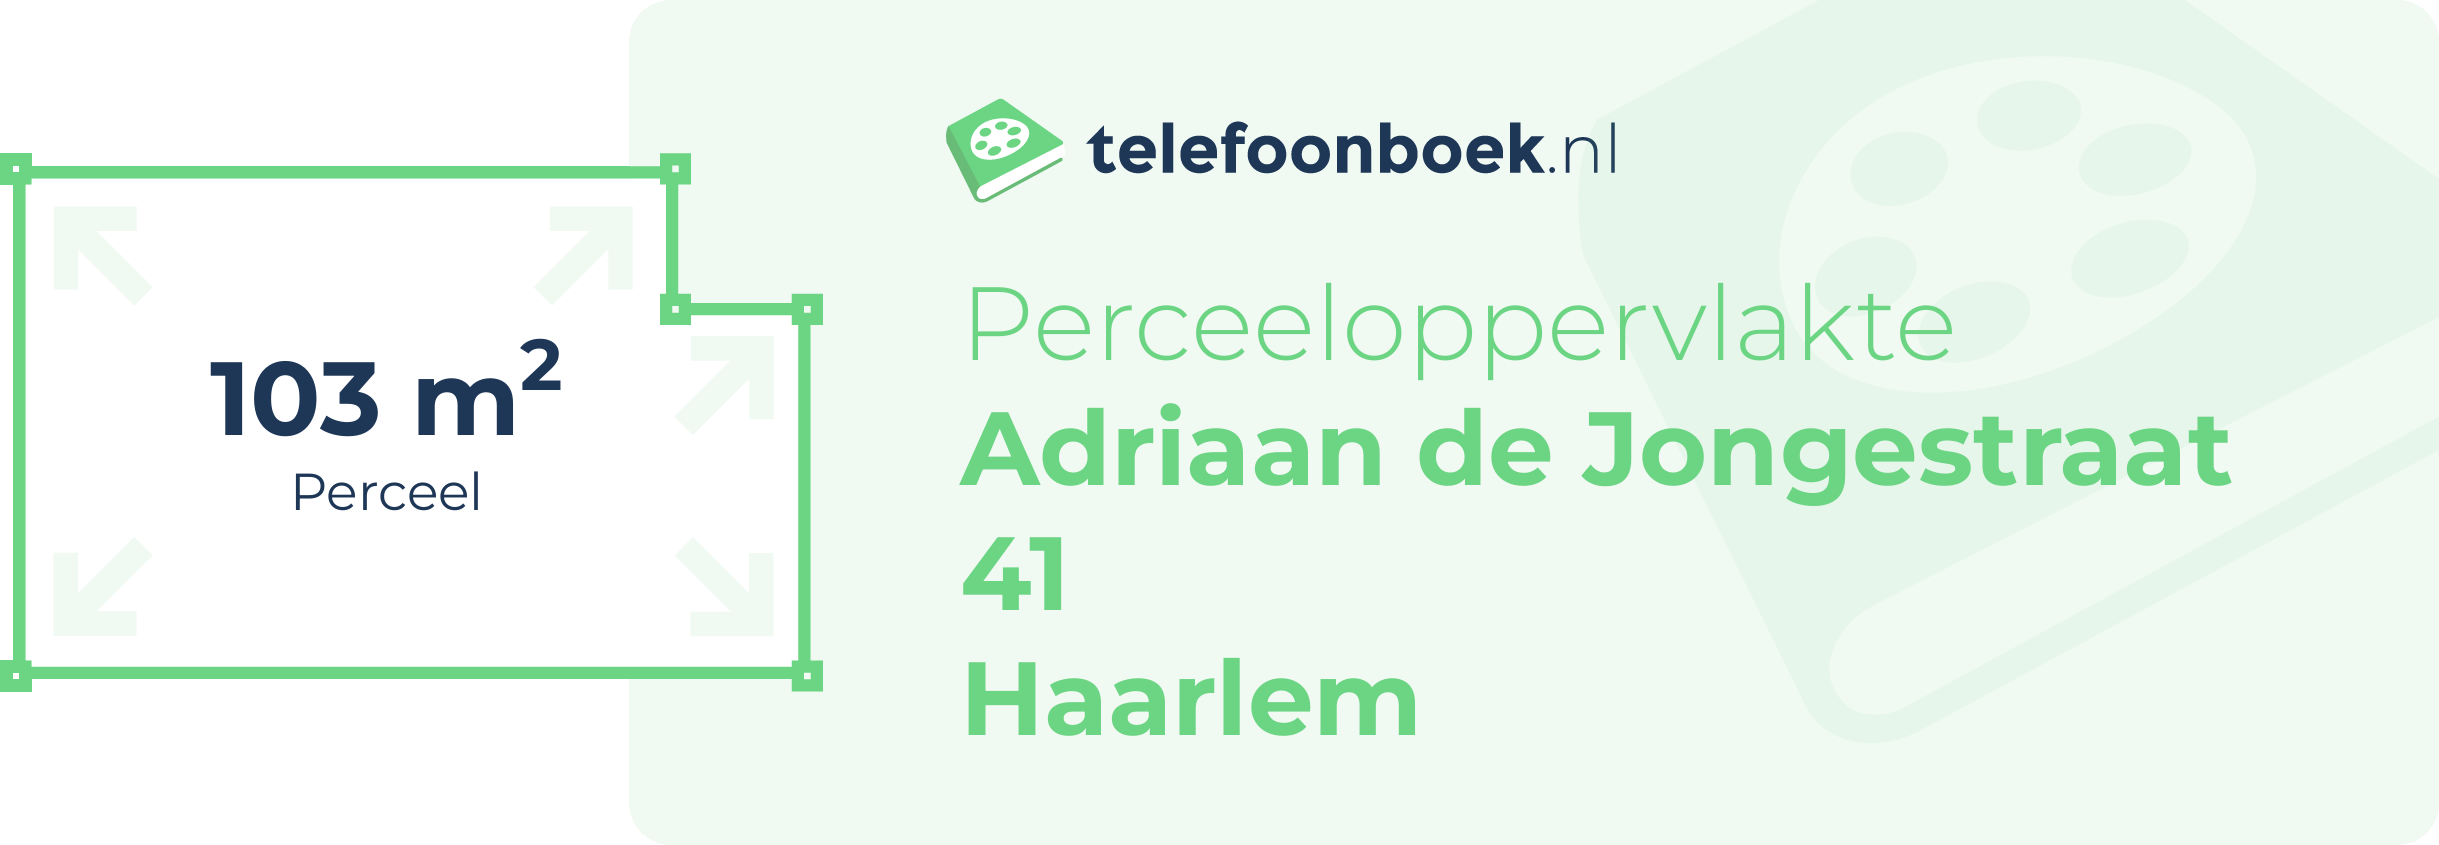 Perceeloppervlakte Adriaan De Jongestraat 41 Haarlem